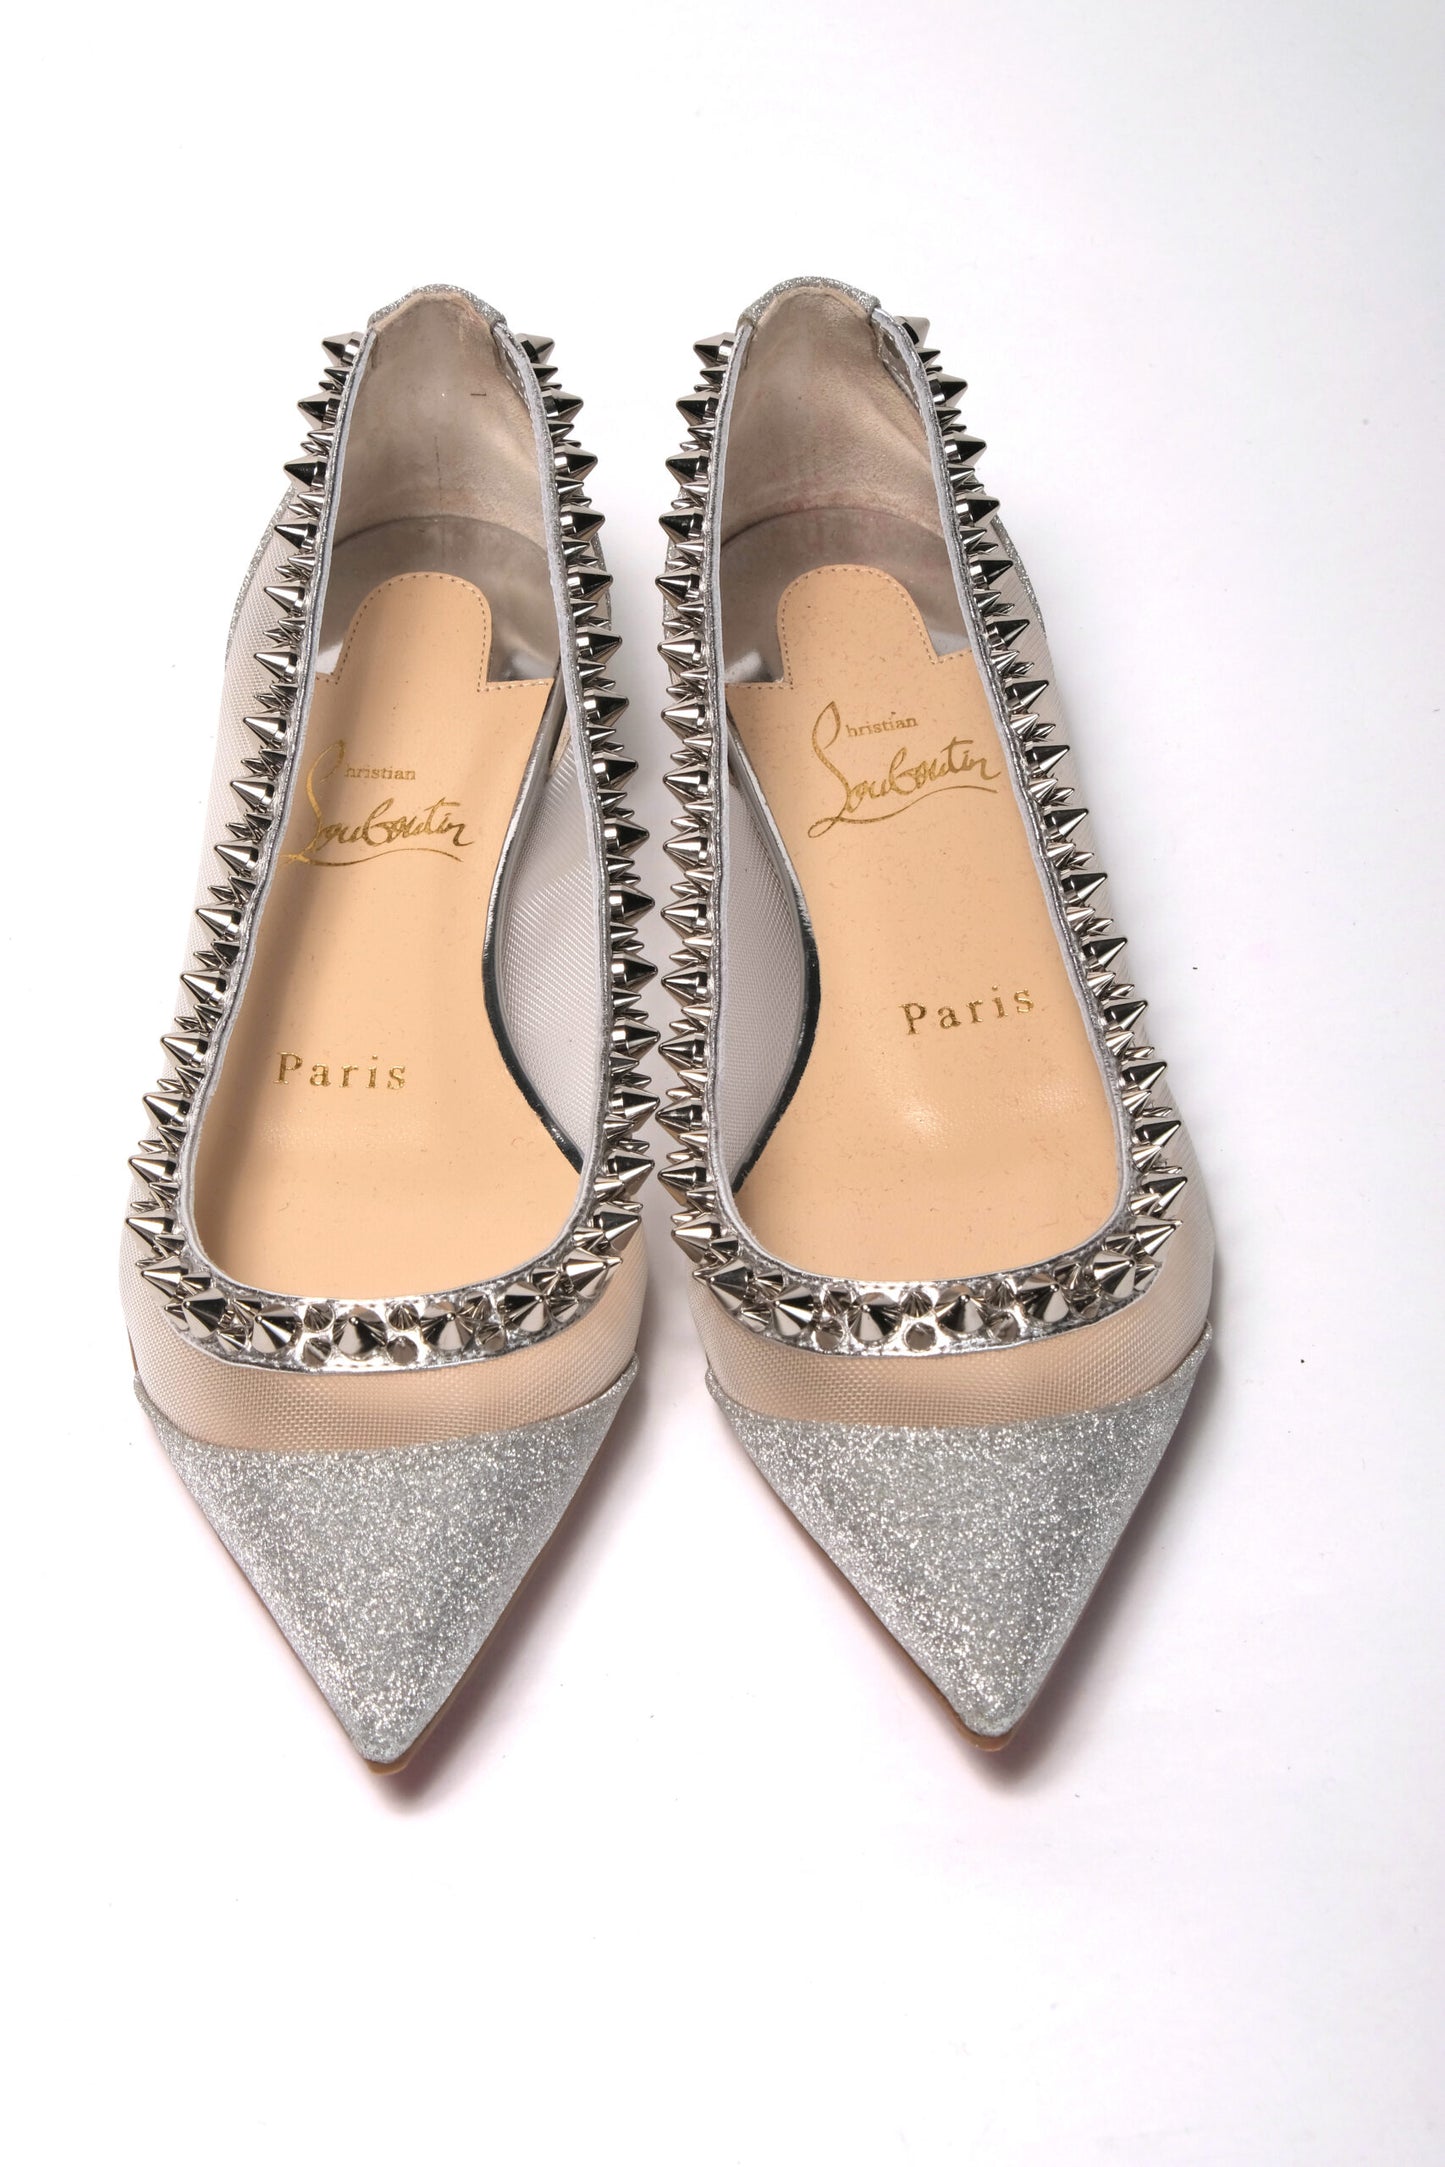 حذاء كريستيان لوبوتان ذو مقدمة مسطحة باللون الفضي